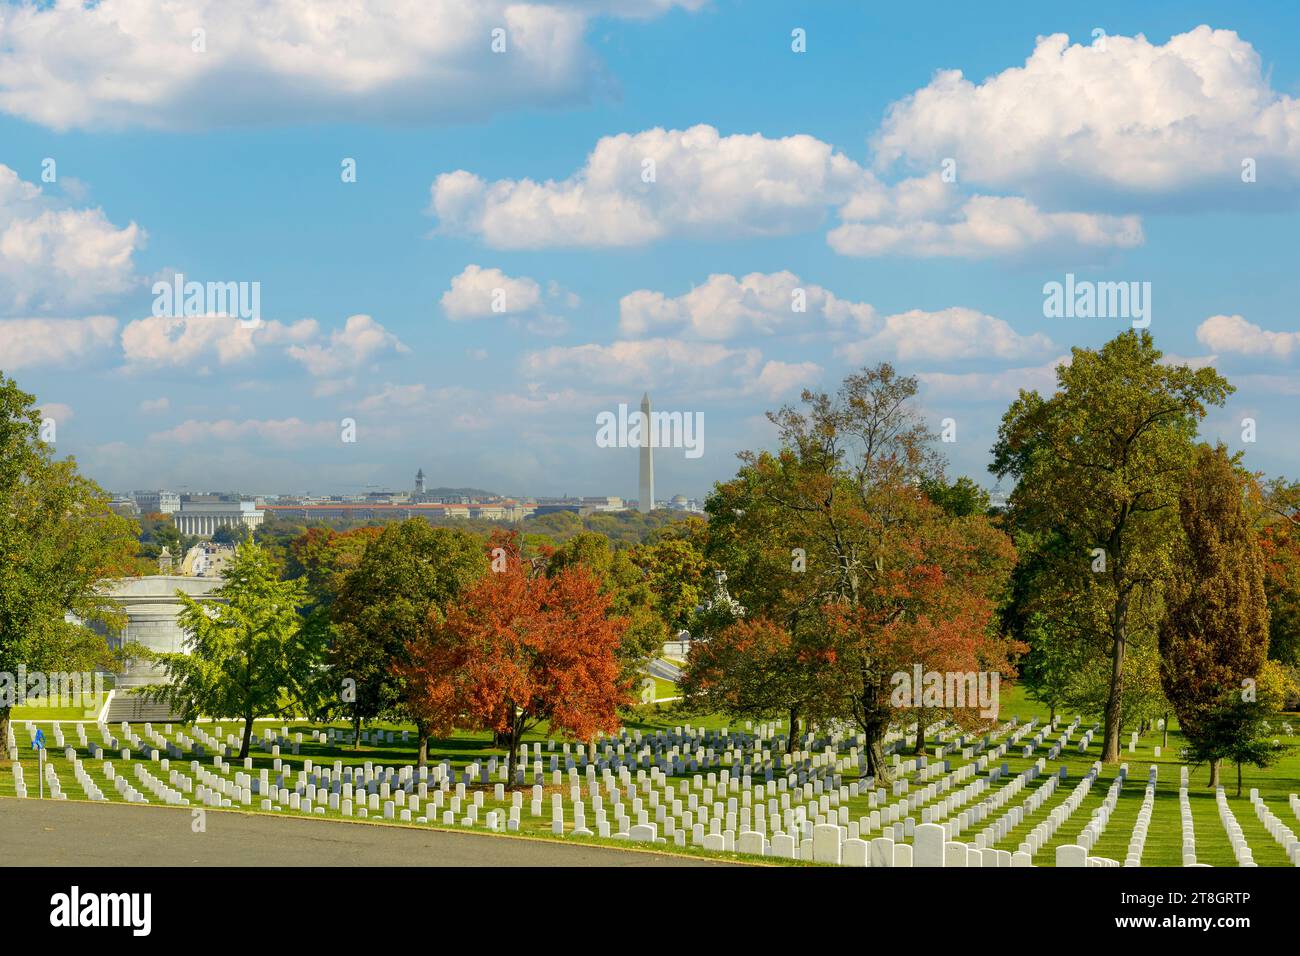 Rangées de héros enterrés au cimetière national d'Arlington en Virginie, certaines datant de la guerre de Sécession Banque D'Images